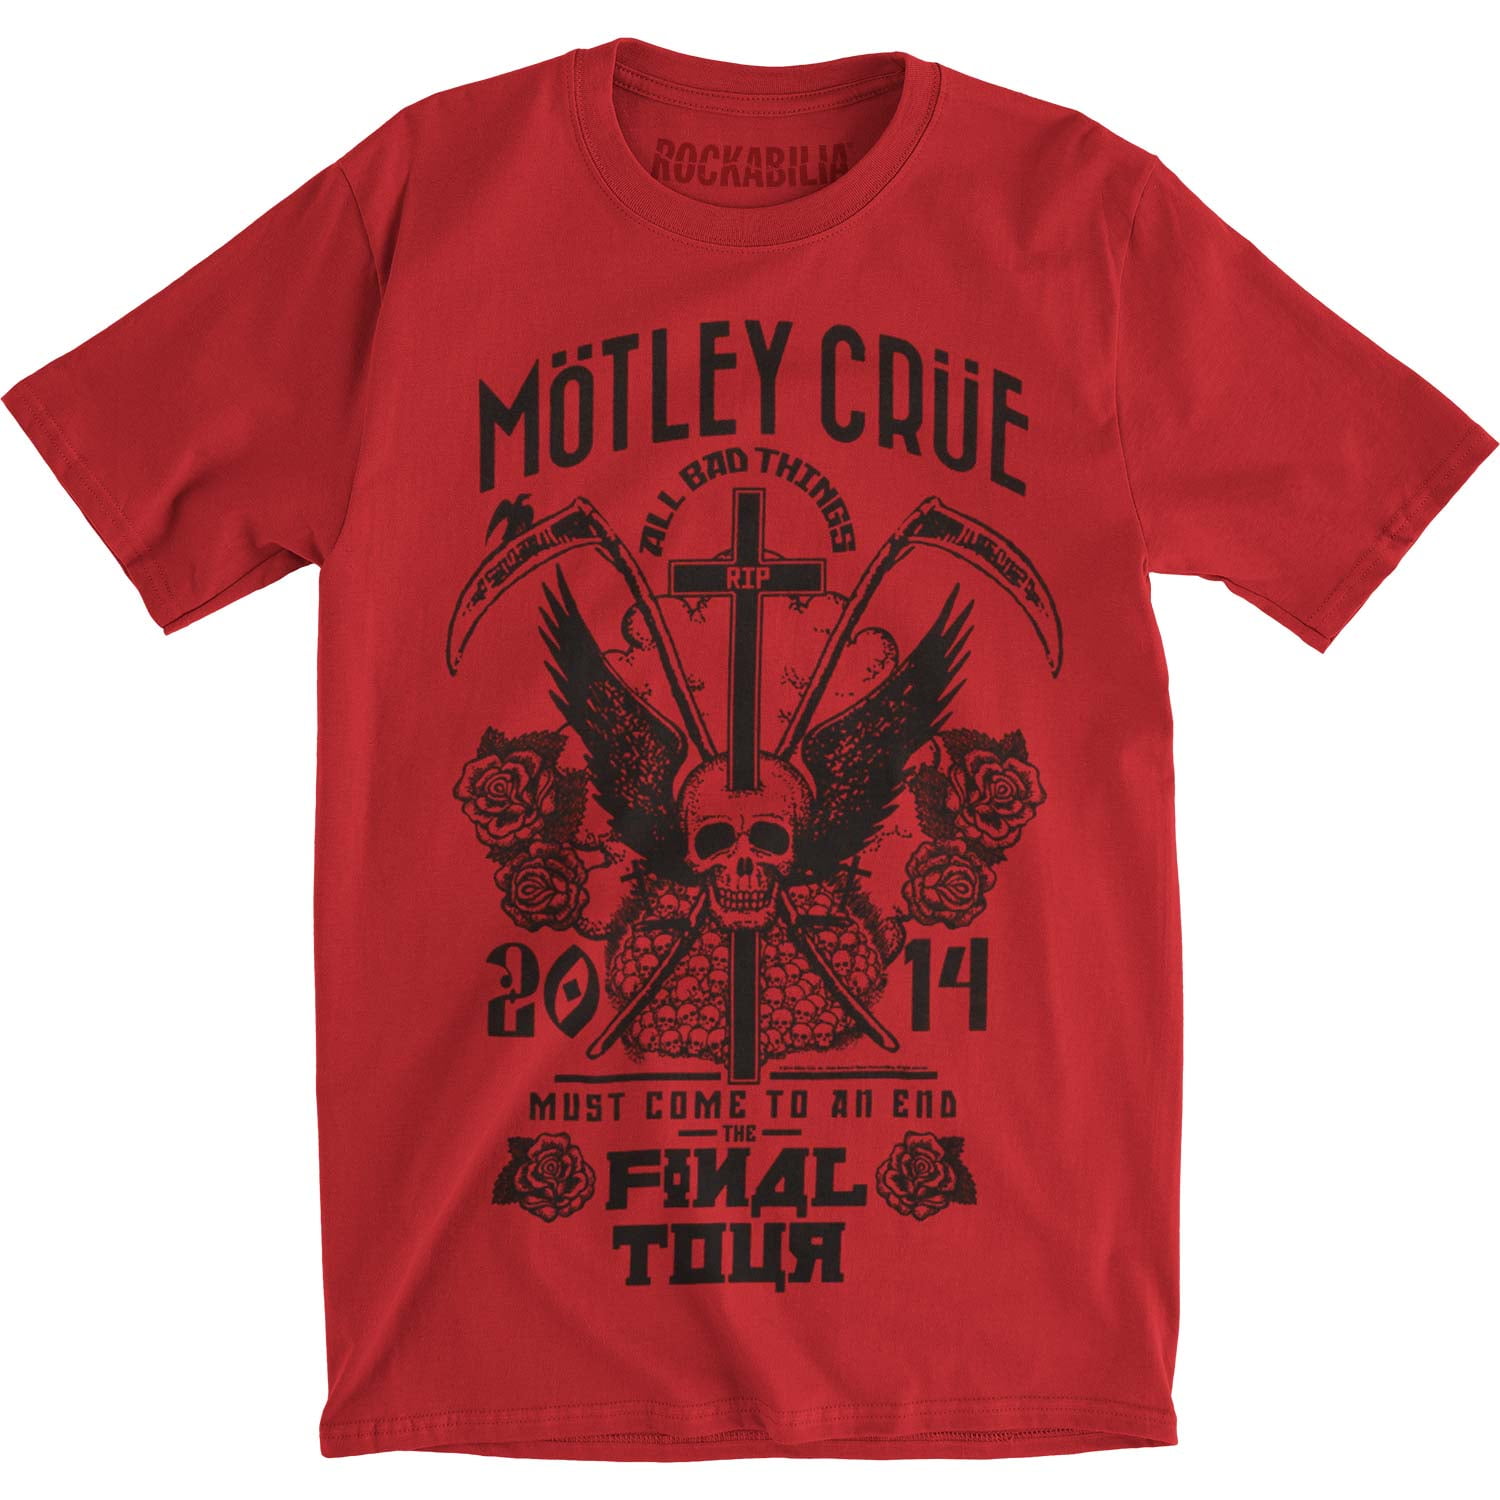 Motley Crue Final Tour 2015 Nurses T-Shirt Tee Cotton Reprint Unisex S-4XL